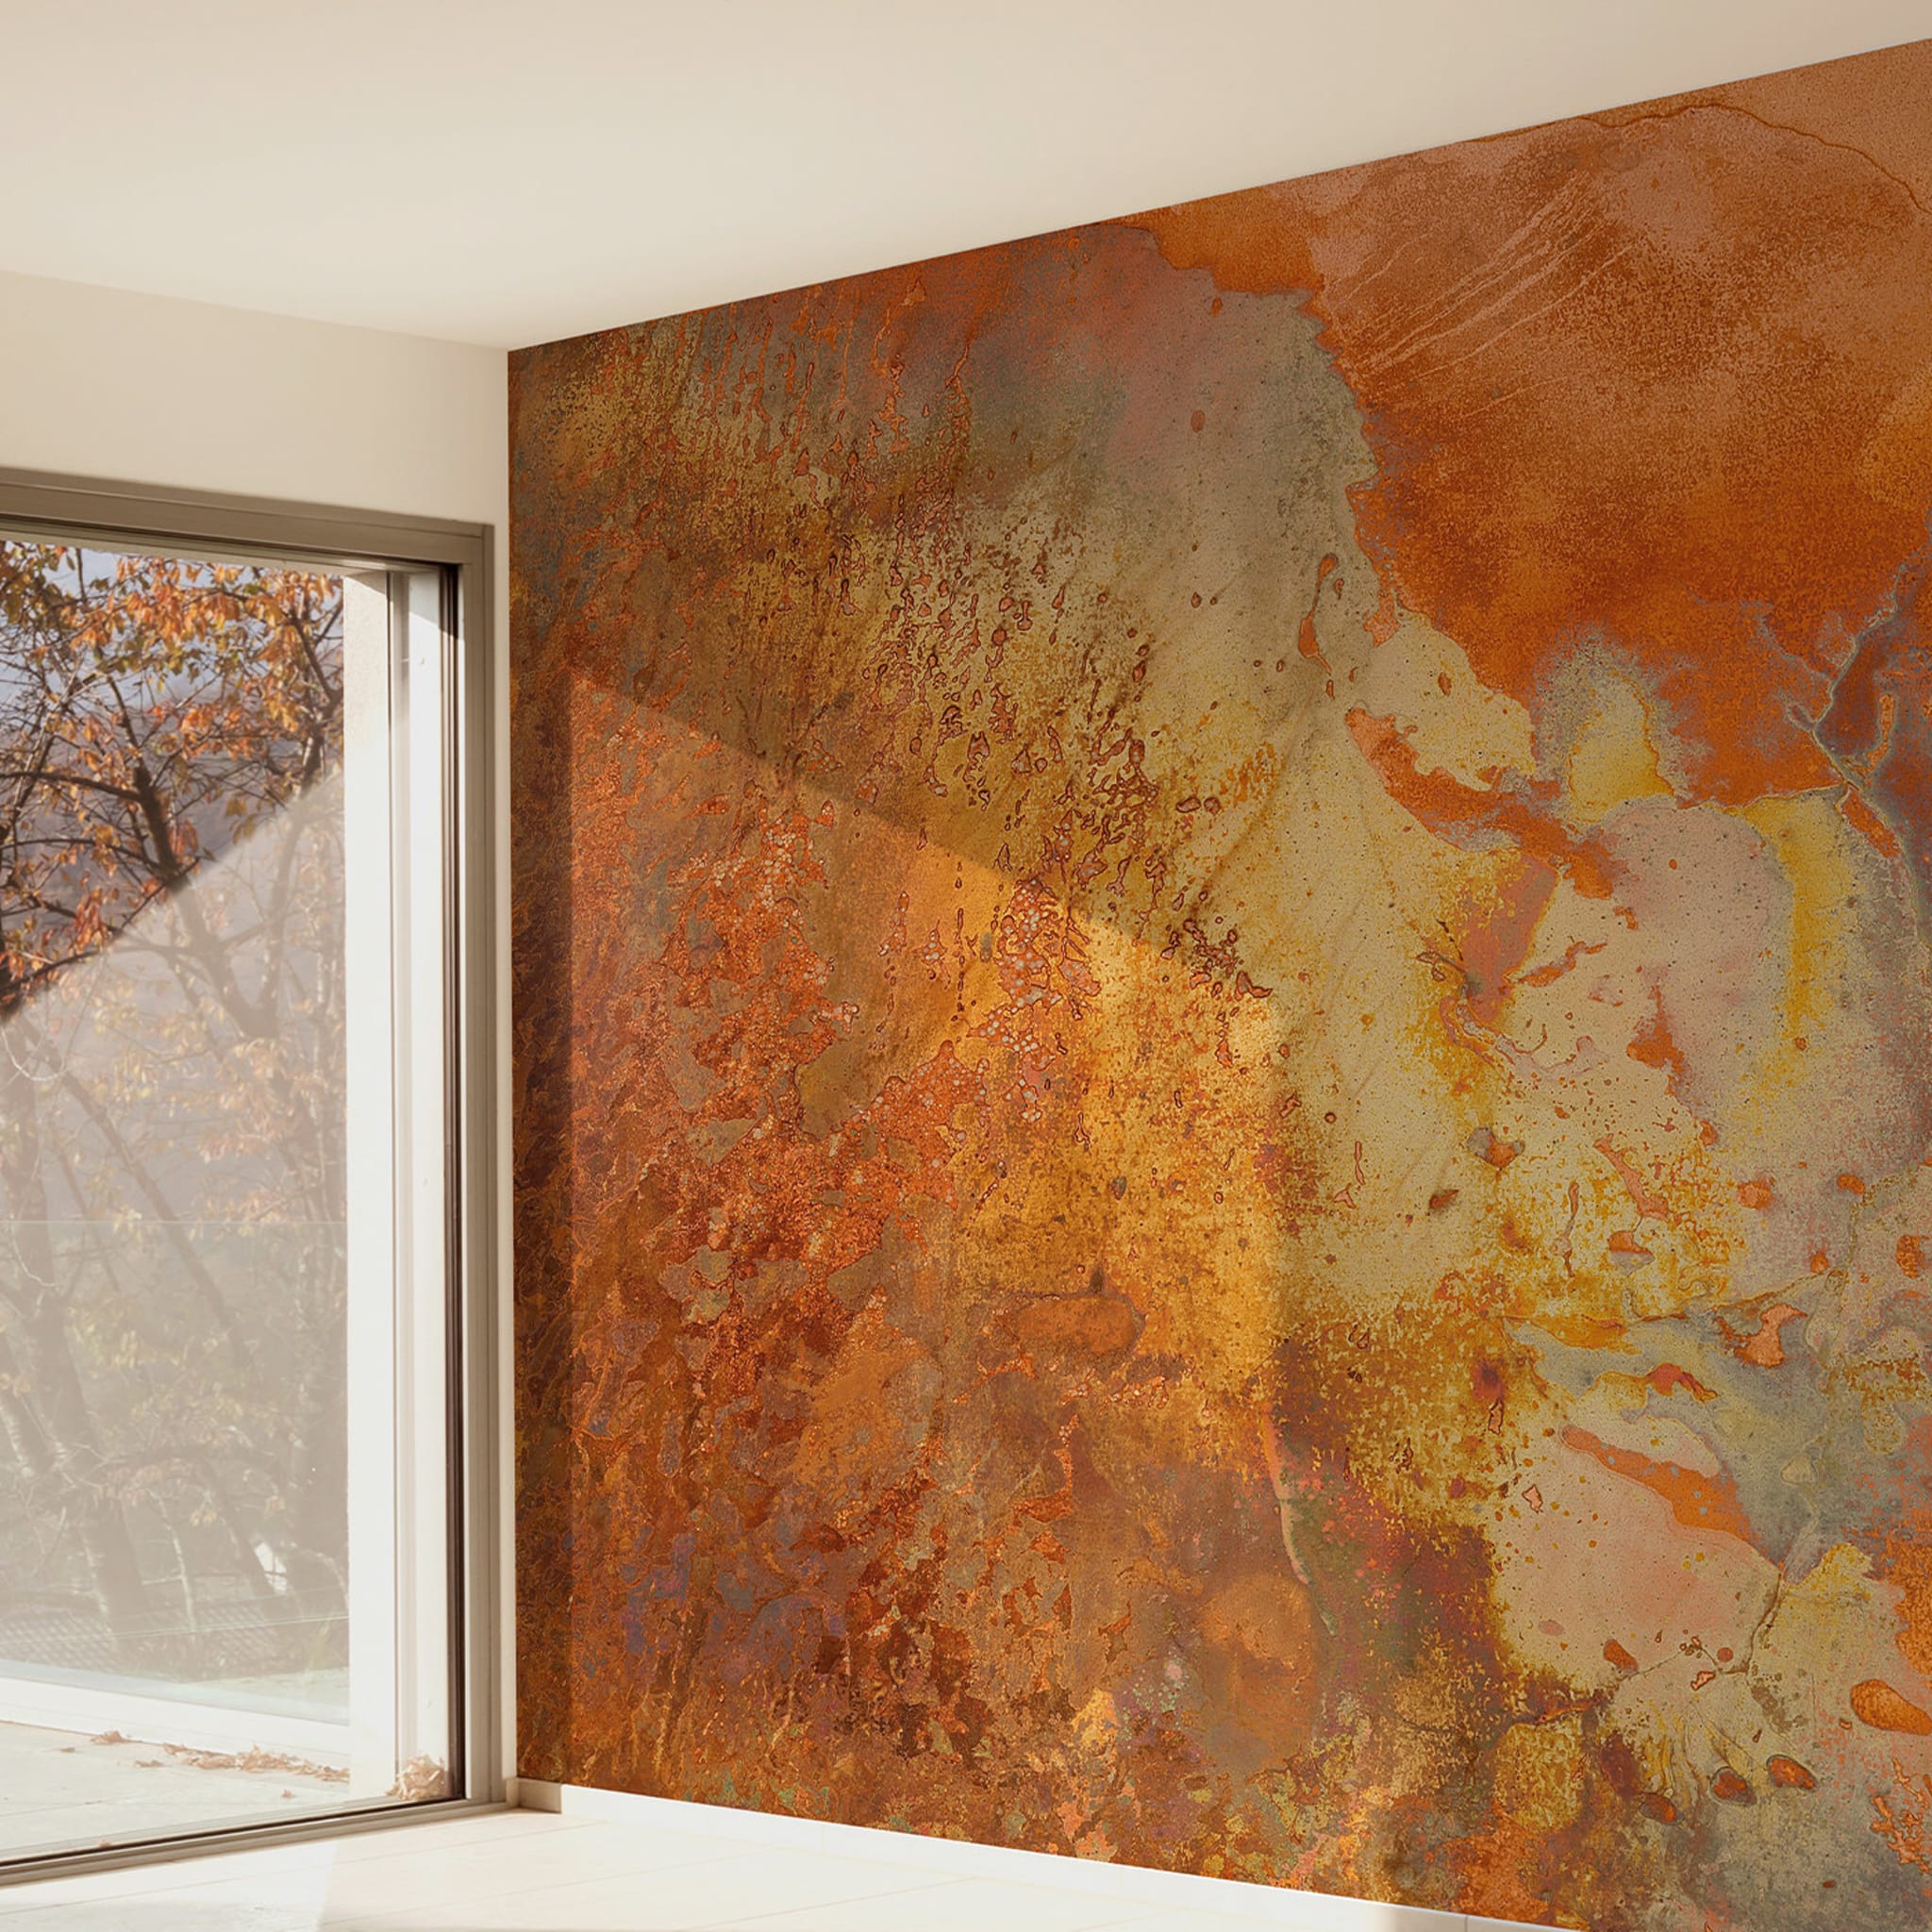 Orange Textured Wallpaper #1 - Alternative view 1